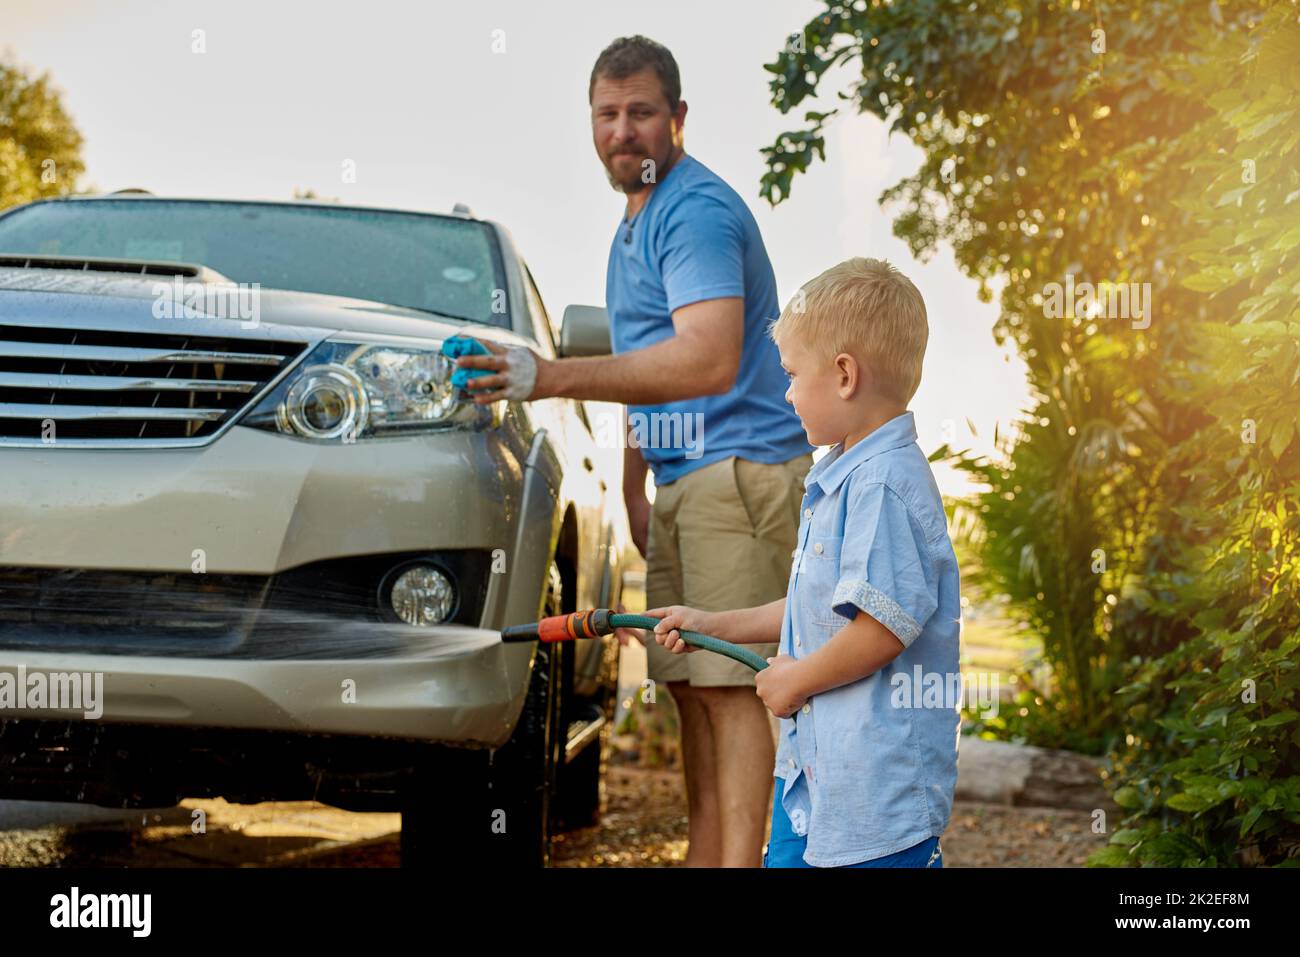 Er mag jung sein, aber er ist immer noch sehr hilfsbereit. Ausgeschnittene Aufnahme eines Vaters und eines Sohnes, der zusammen ein Auto wascht. Stockfoto